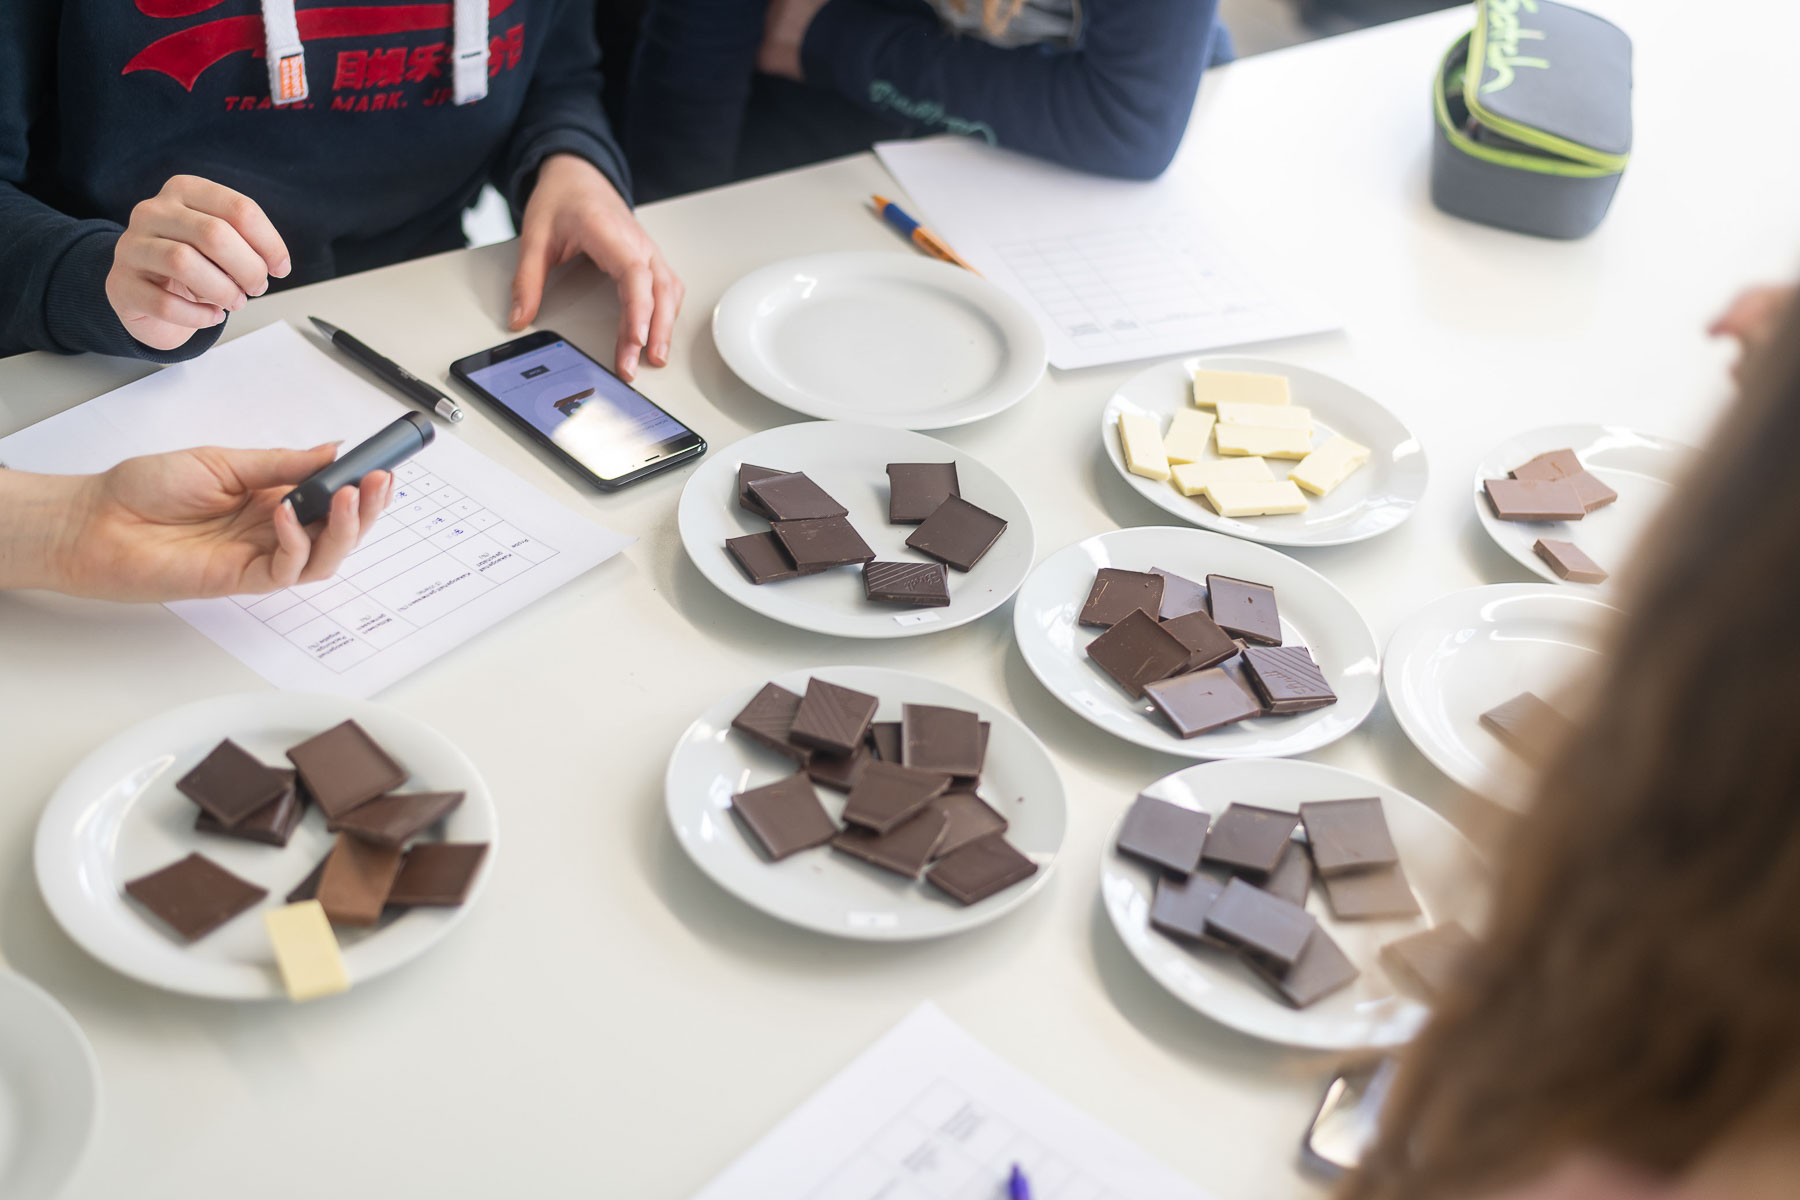 Schokolade testen am Studiengang Ernährungswissenschaften: Girlsday an einer Hochschule bei dem die Schülerinnen verschiedene Angebote wahrnehmen.